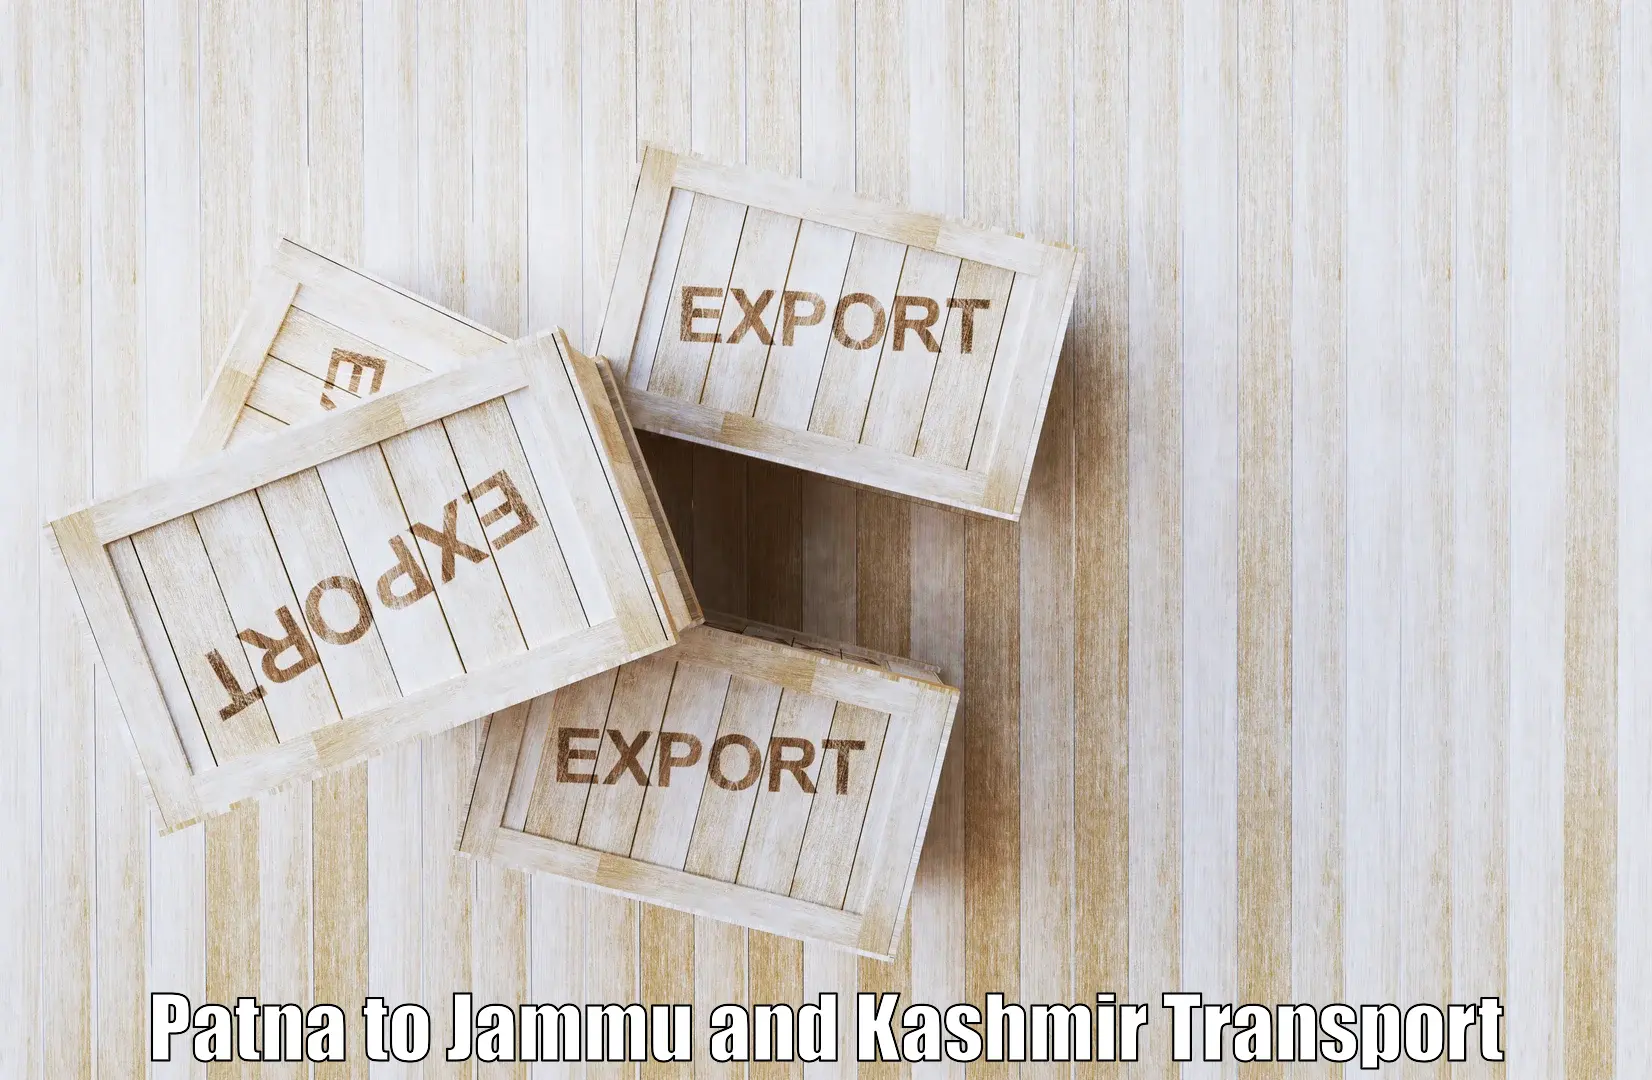 Two wheeler parcel service Patna to University of Jammu